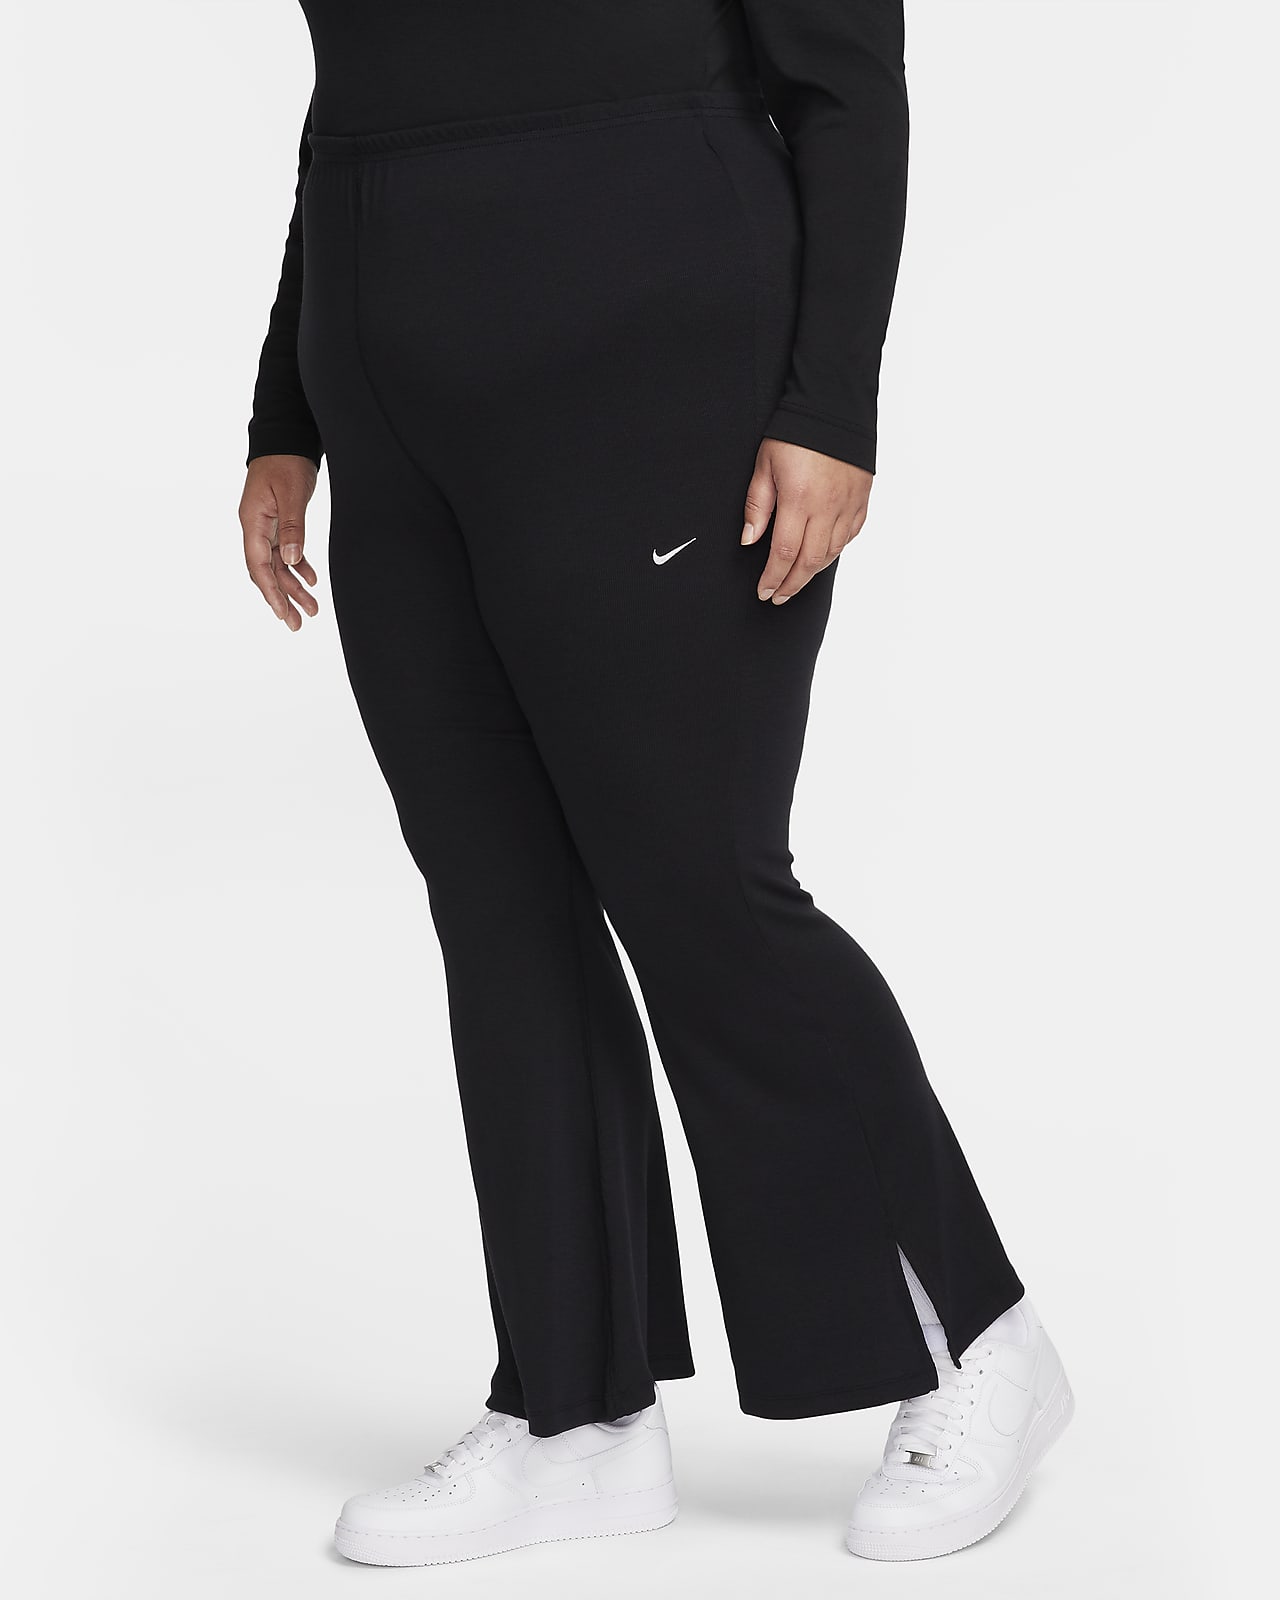 Γυναικείο κολάν σε εφαρμοστή γραμμή με διακριτική ριμπ ύφανση και μπατζάκια που φαρδαίνουν προς τα κάτω Nike Sportswear Chill Knit (μεγάλα μεγέθη)